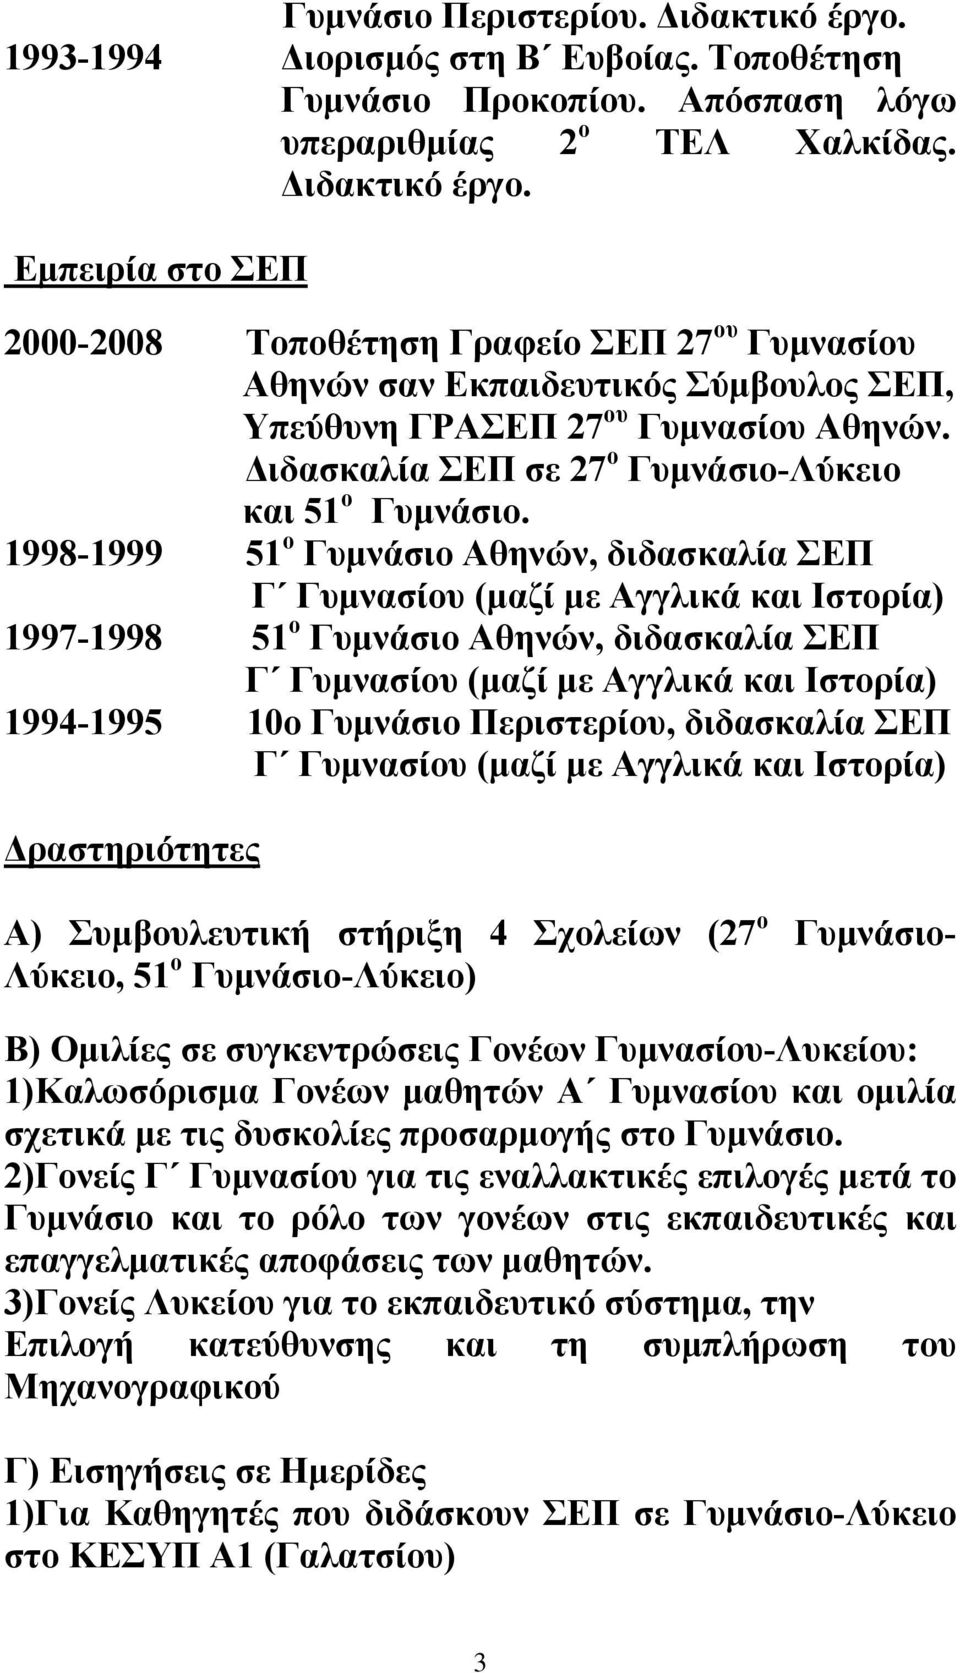 1998-1999 51 ο Γυμνάσιο Αθηνών, διδασκαλία ΣΕΠ Γ Γυμνασίου (μαζί με Αγγλικά και Ιστορία) 1997-1998 51 ο Γυμνάσιο Αθηνών, διδασκαλία ΣΕΠ Γ Γυμνασίου (μαζί με Αγγλικά και Ιστορία) 1994-1995 10ο